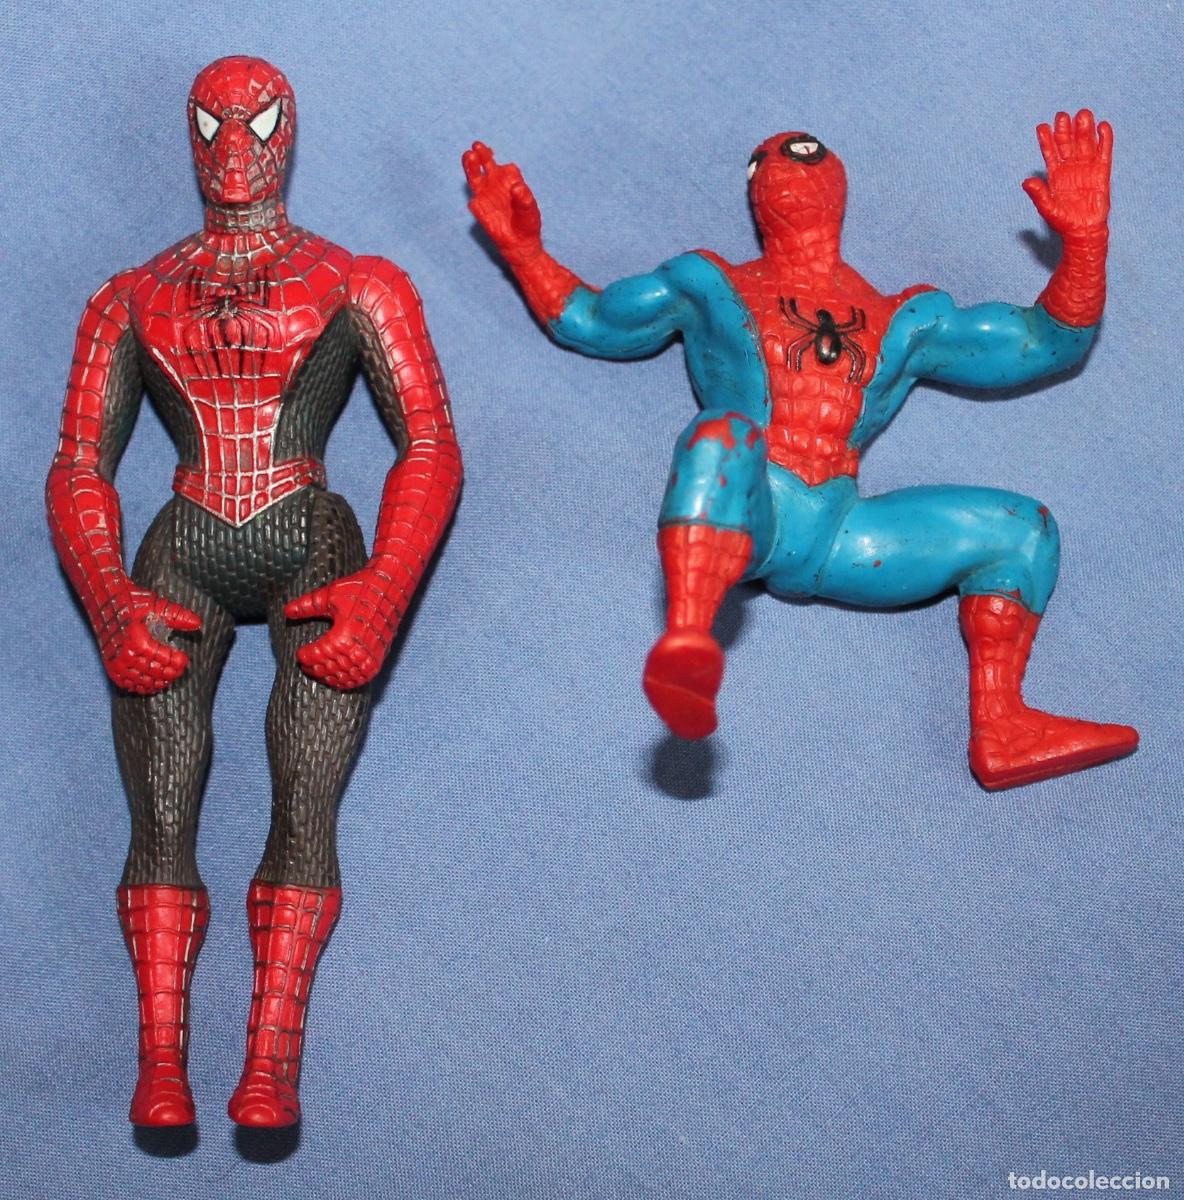 muñeco spiderman - Compra venta en todocoleccion